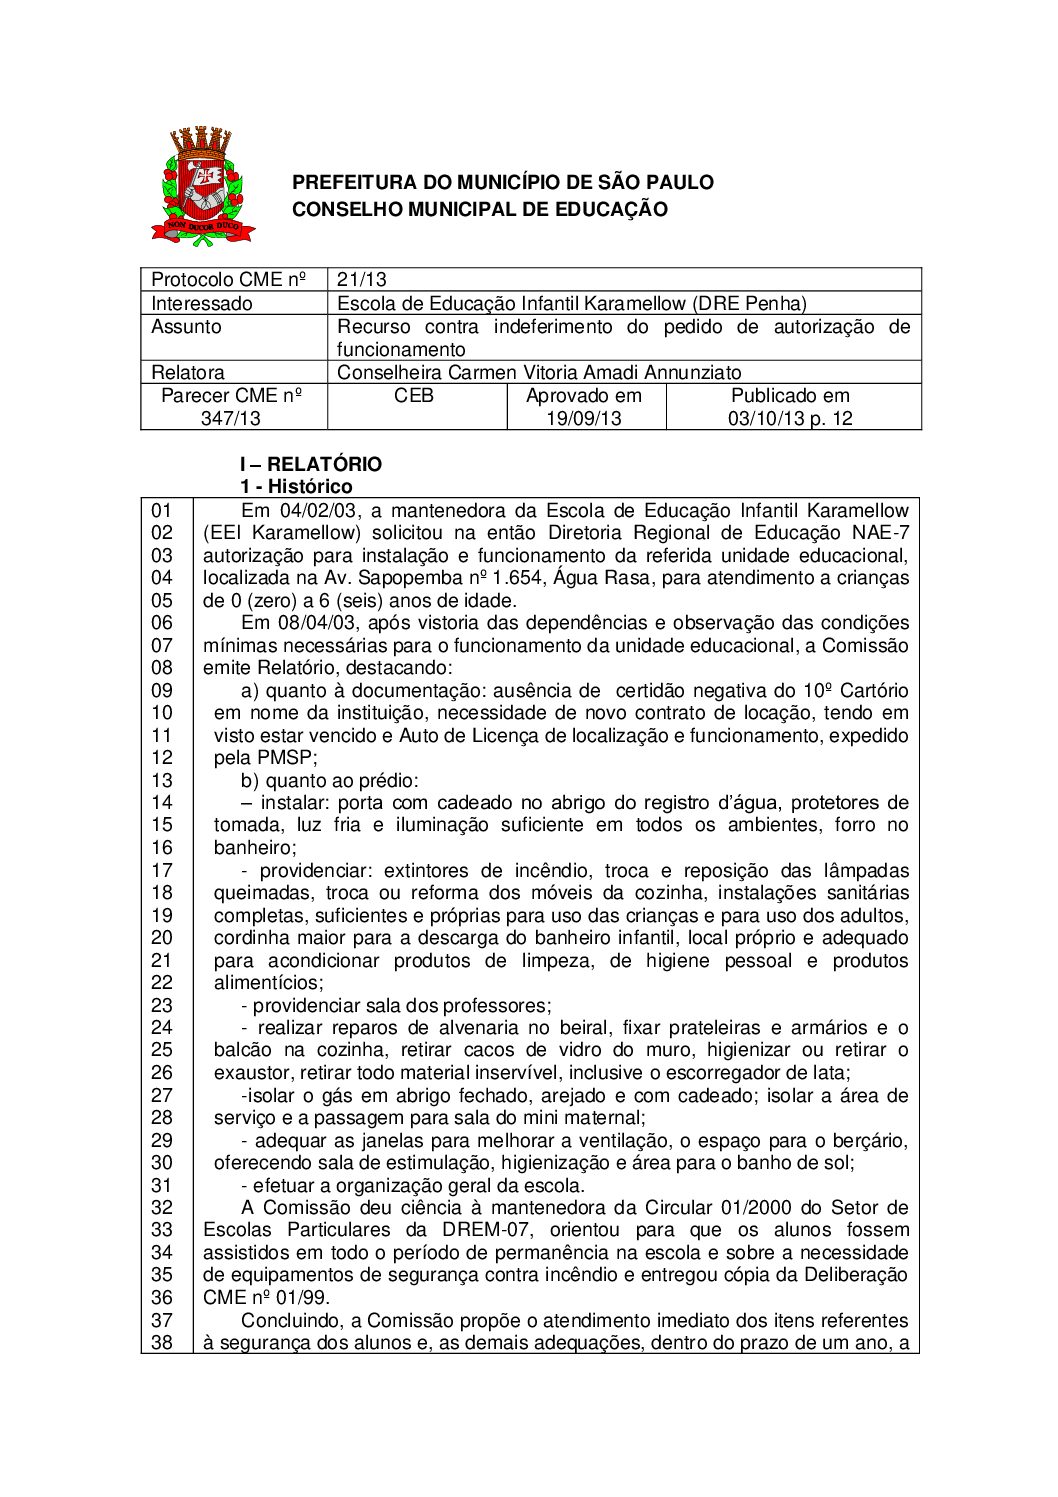 Parecer CME nº 347/2013 - Escola de Educação Infantil Karamellow (DRE Penha) - Recurso contra indeferimento do pedido de autorização de funcionamento 